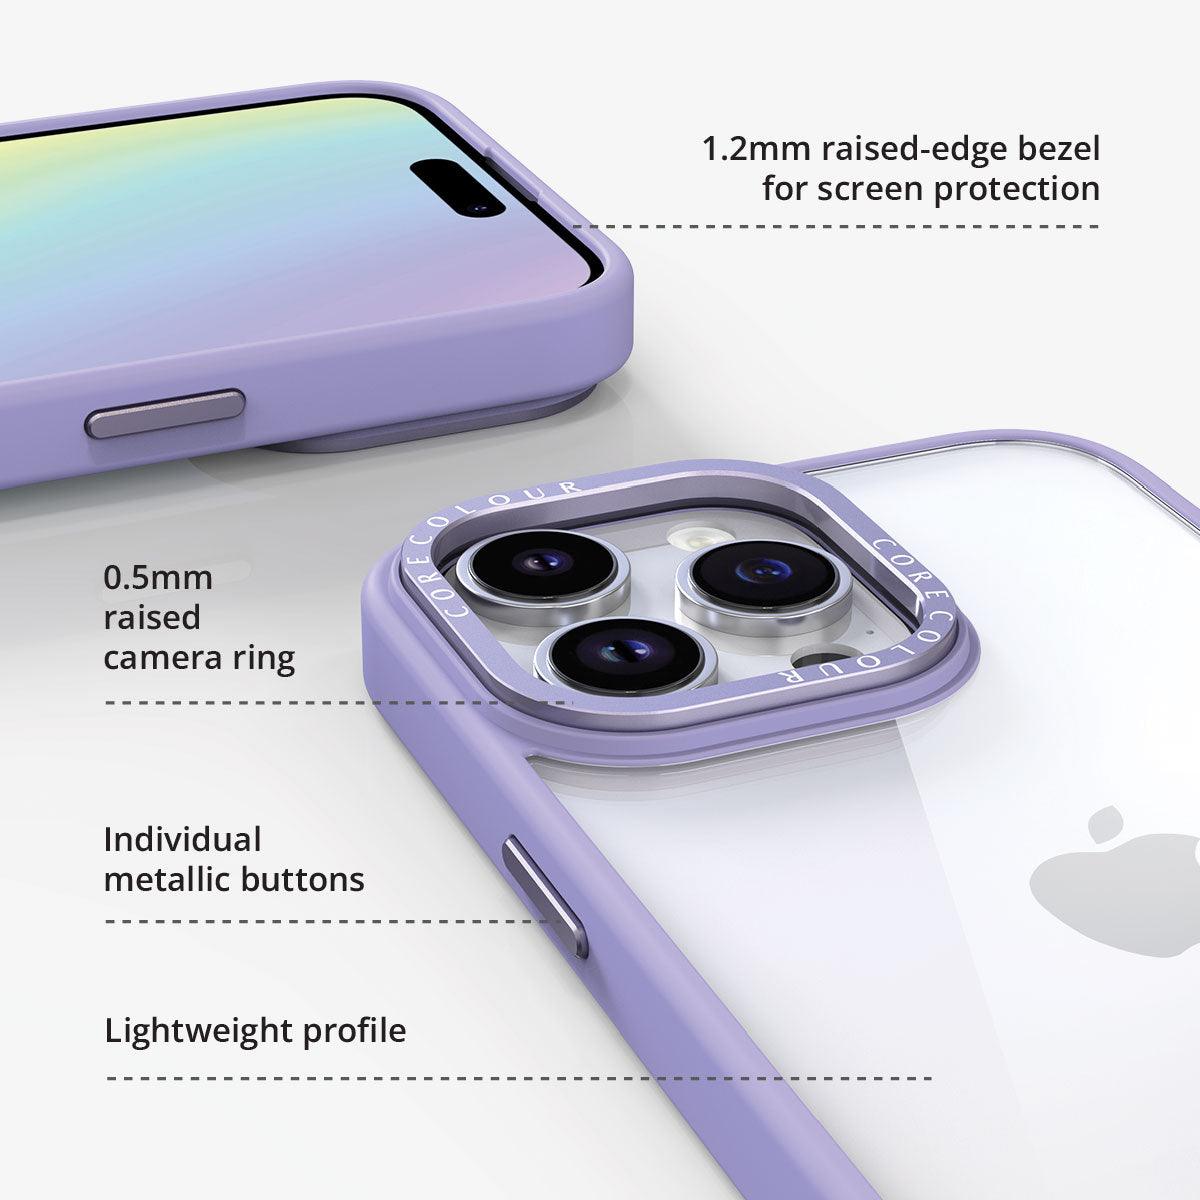 iPhone 12 Pro Jet Black Clear Phone Case - CORECOLOUR